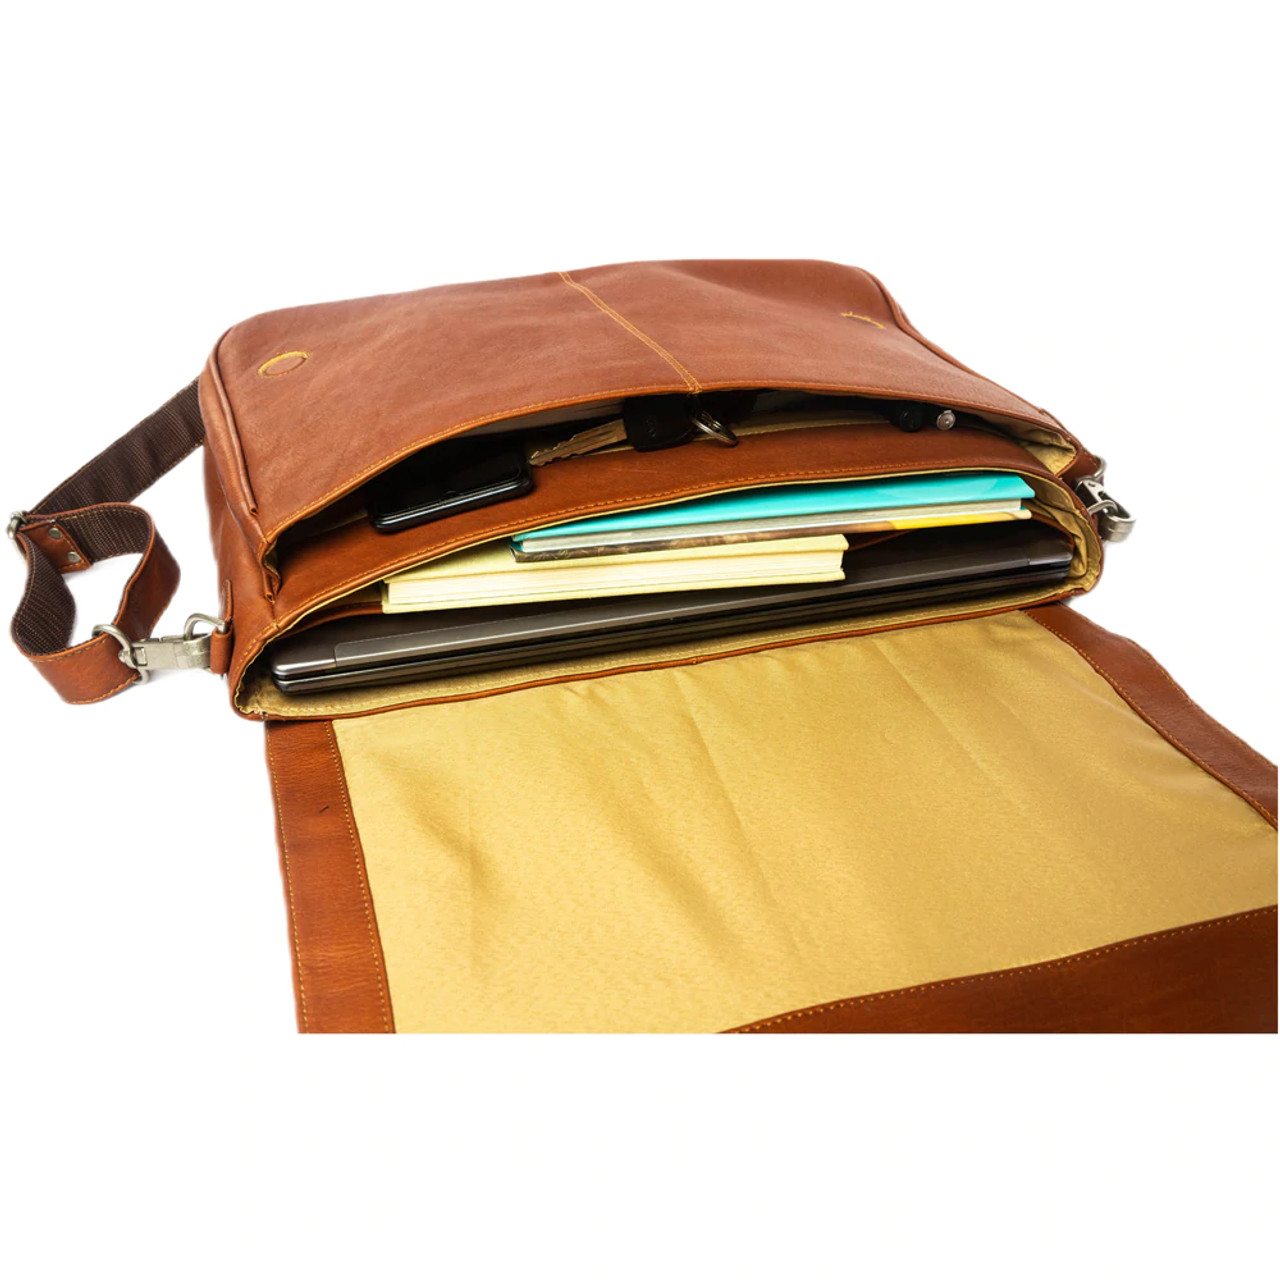 Piel Leather 2360 Professional Laptop Messenger Bag